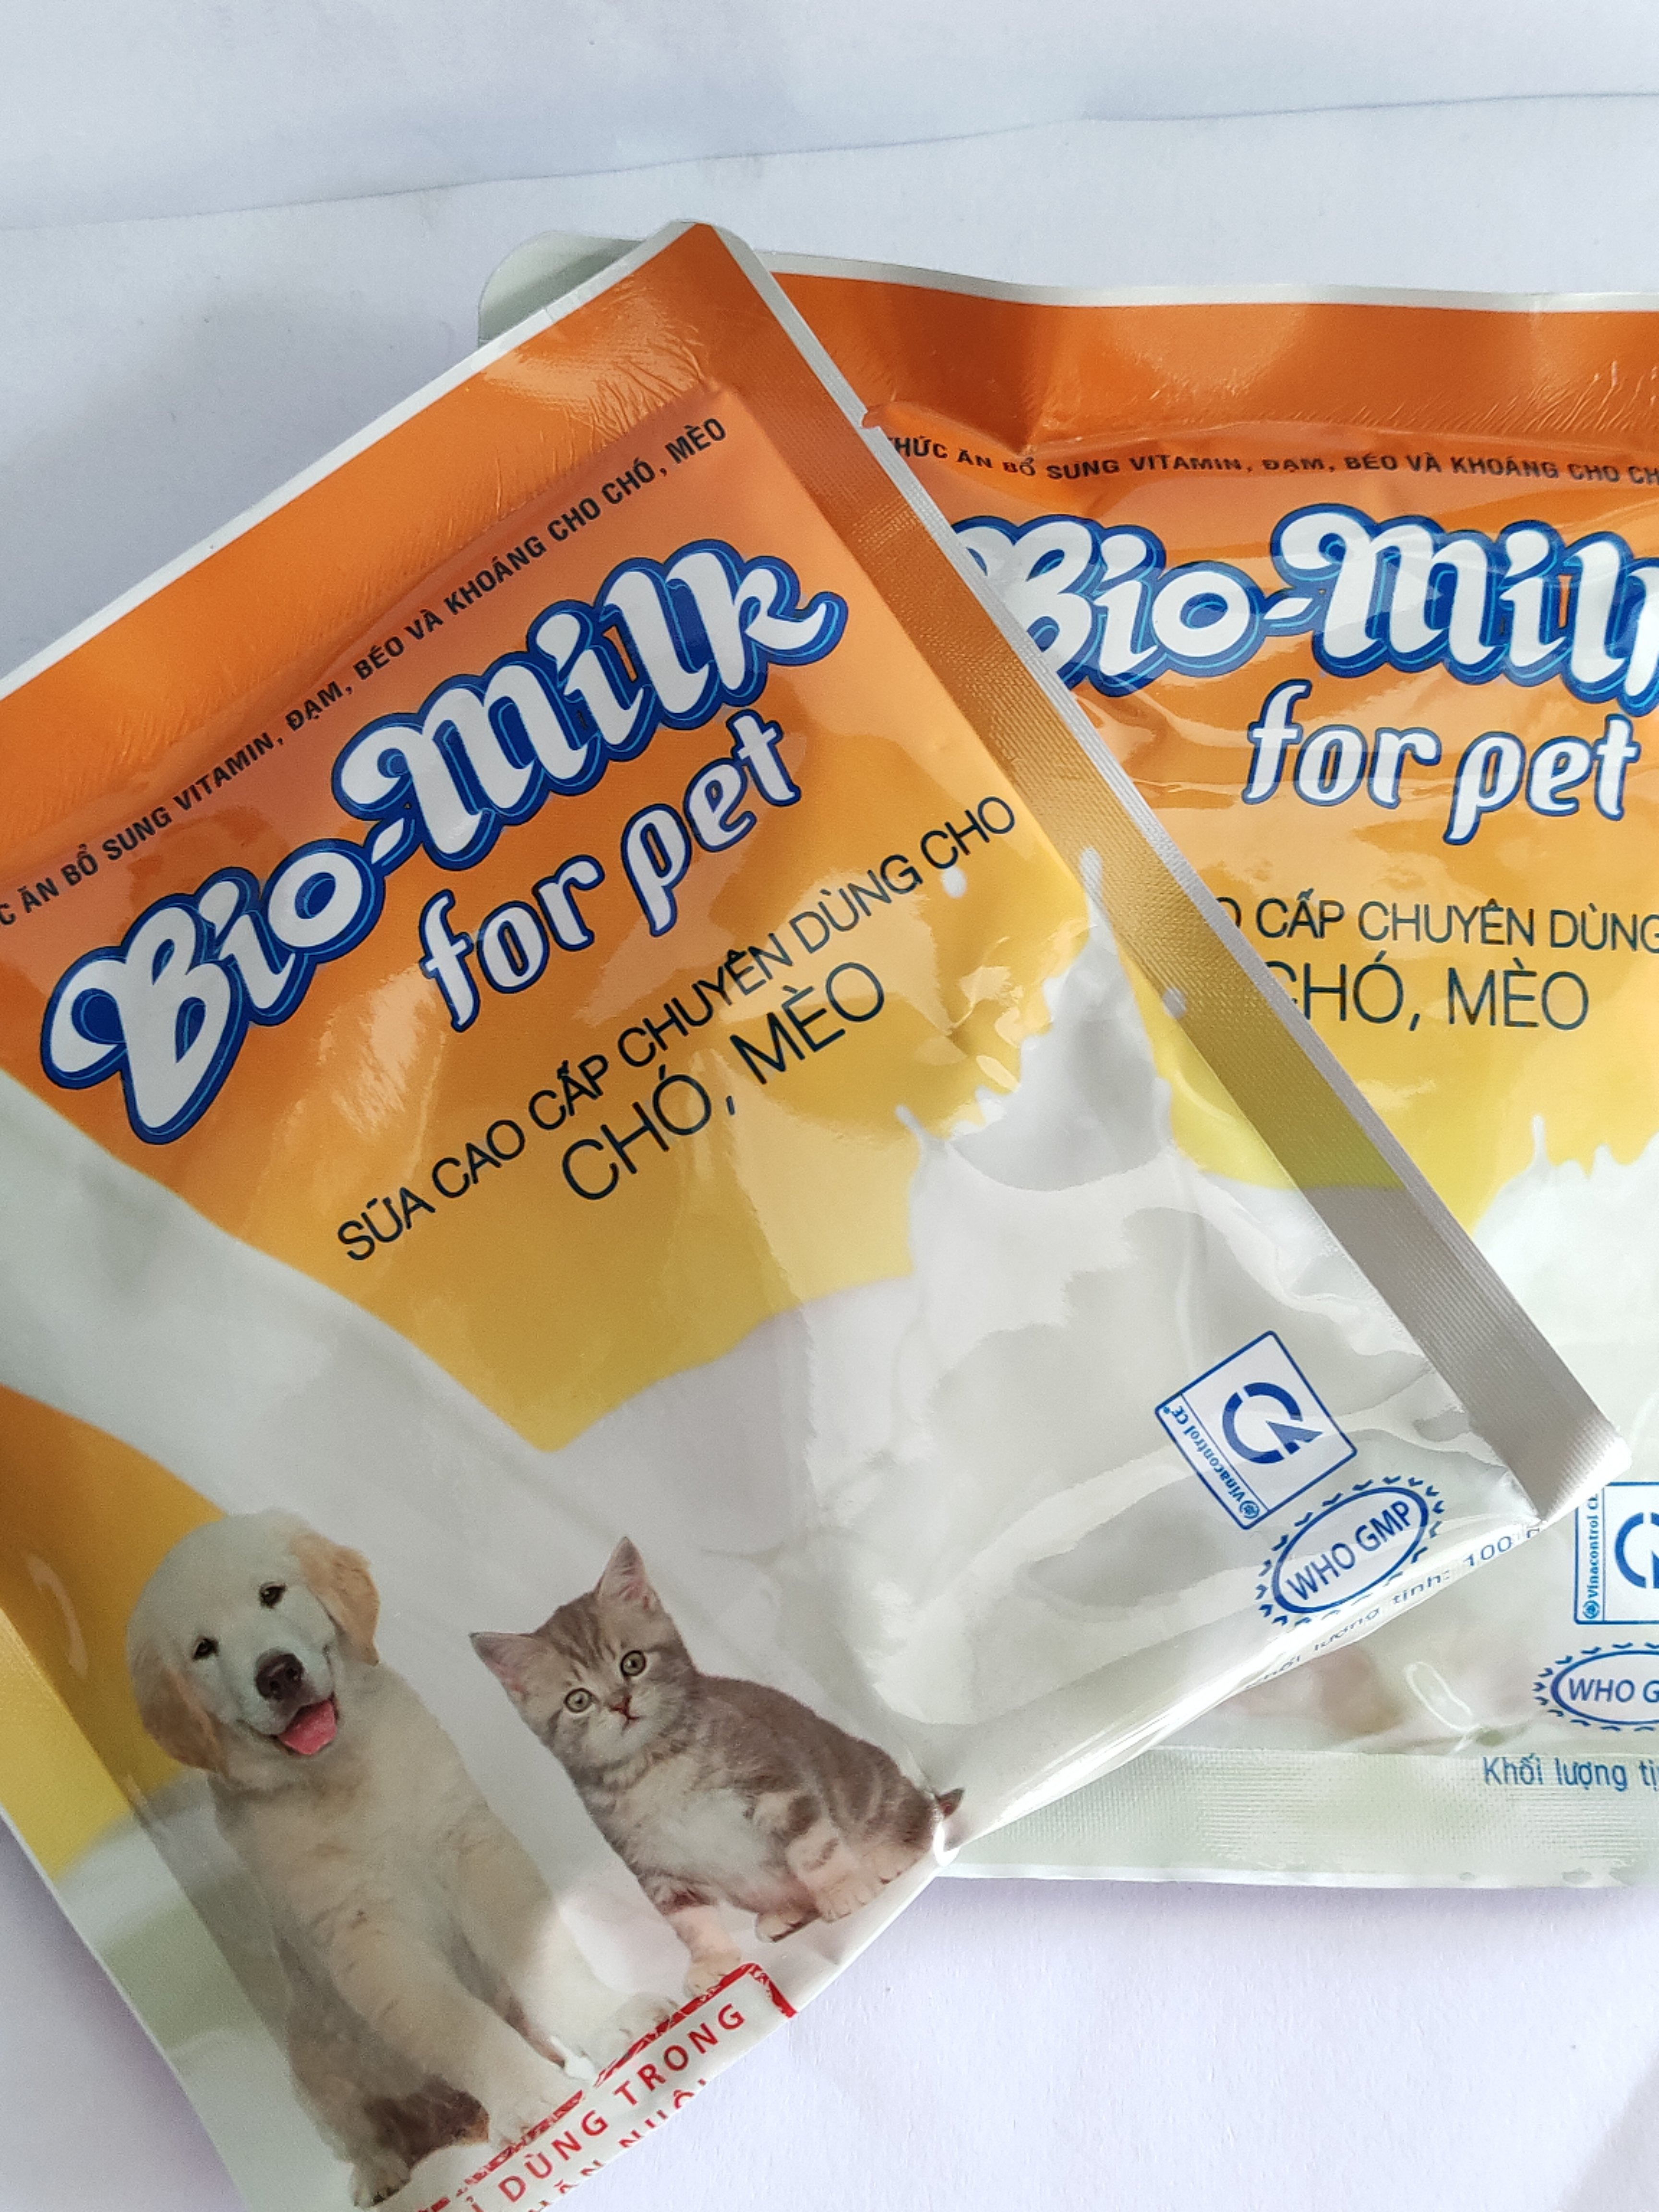 BIO MILK for pet 100G Thức ăn bổ sung vitamin, đạm, béo, sữa cao cấp chuyên dùng cho chó mèo